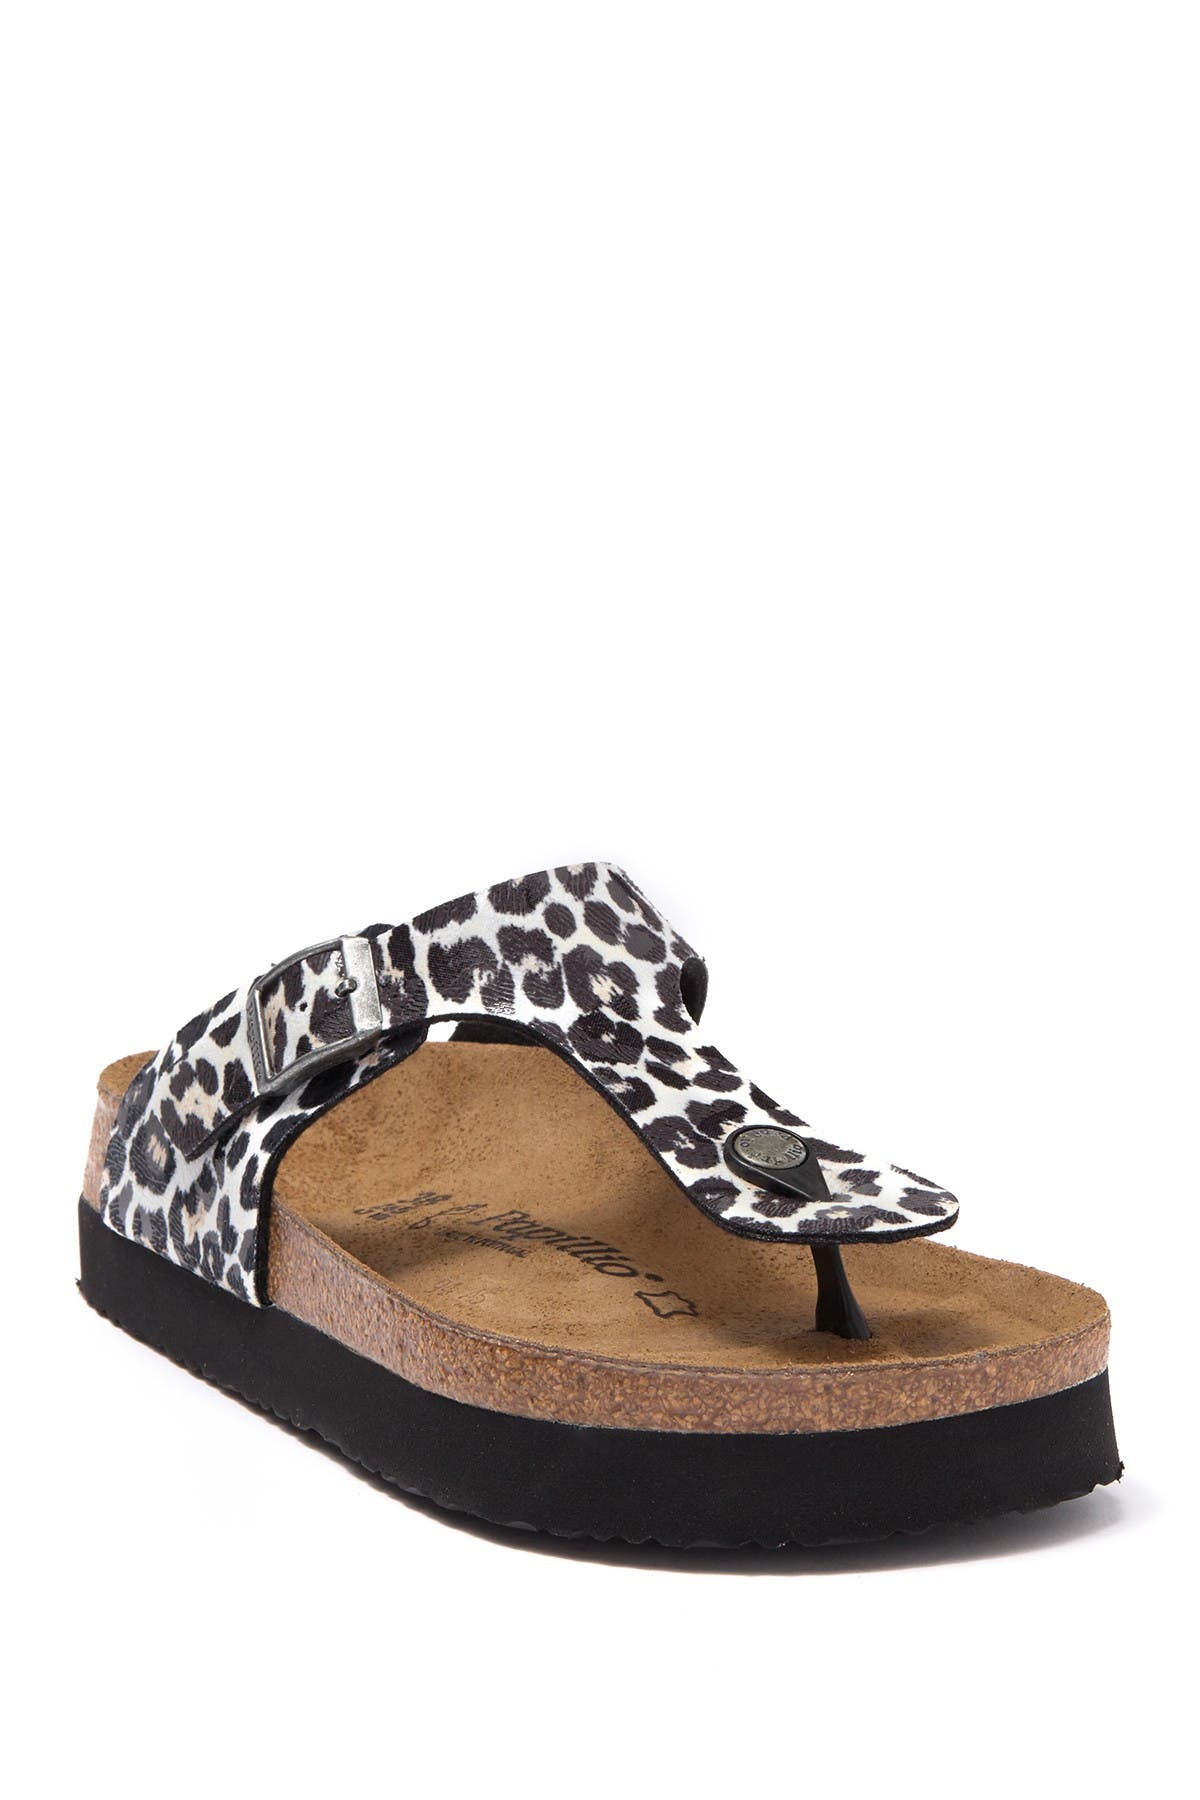 birkenstock leopard print sandals